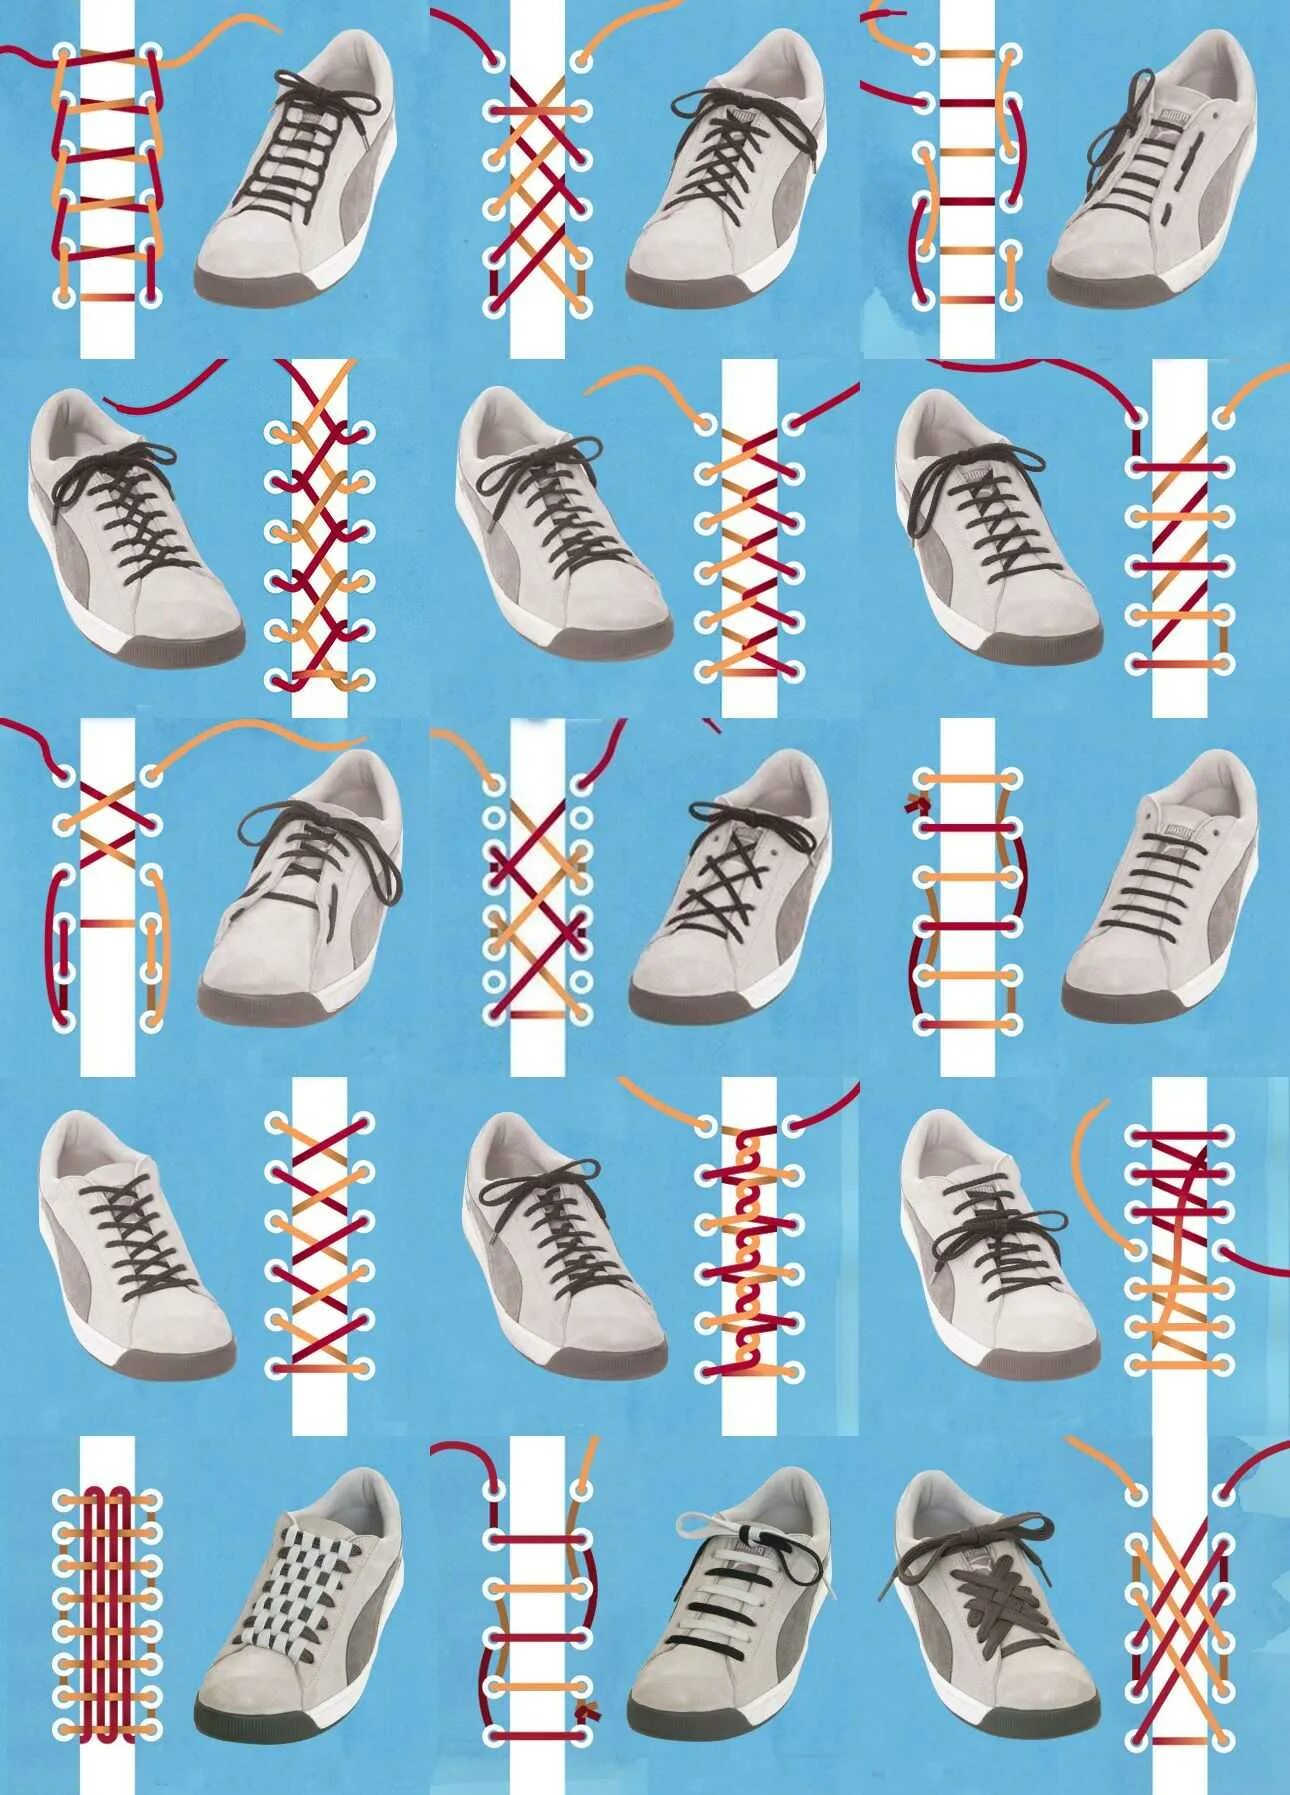 Способы завязывания шнурков на 5 дырок. Типы шнурования шнурков на 5. Зашнуровать кроссовки адидас. Способы зашнуровать шнурки на кроссовках. Как красиво завязать мужские кроссовки